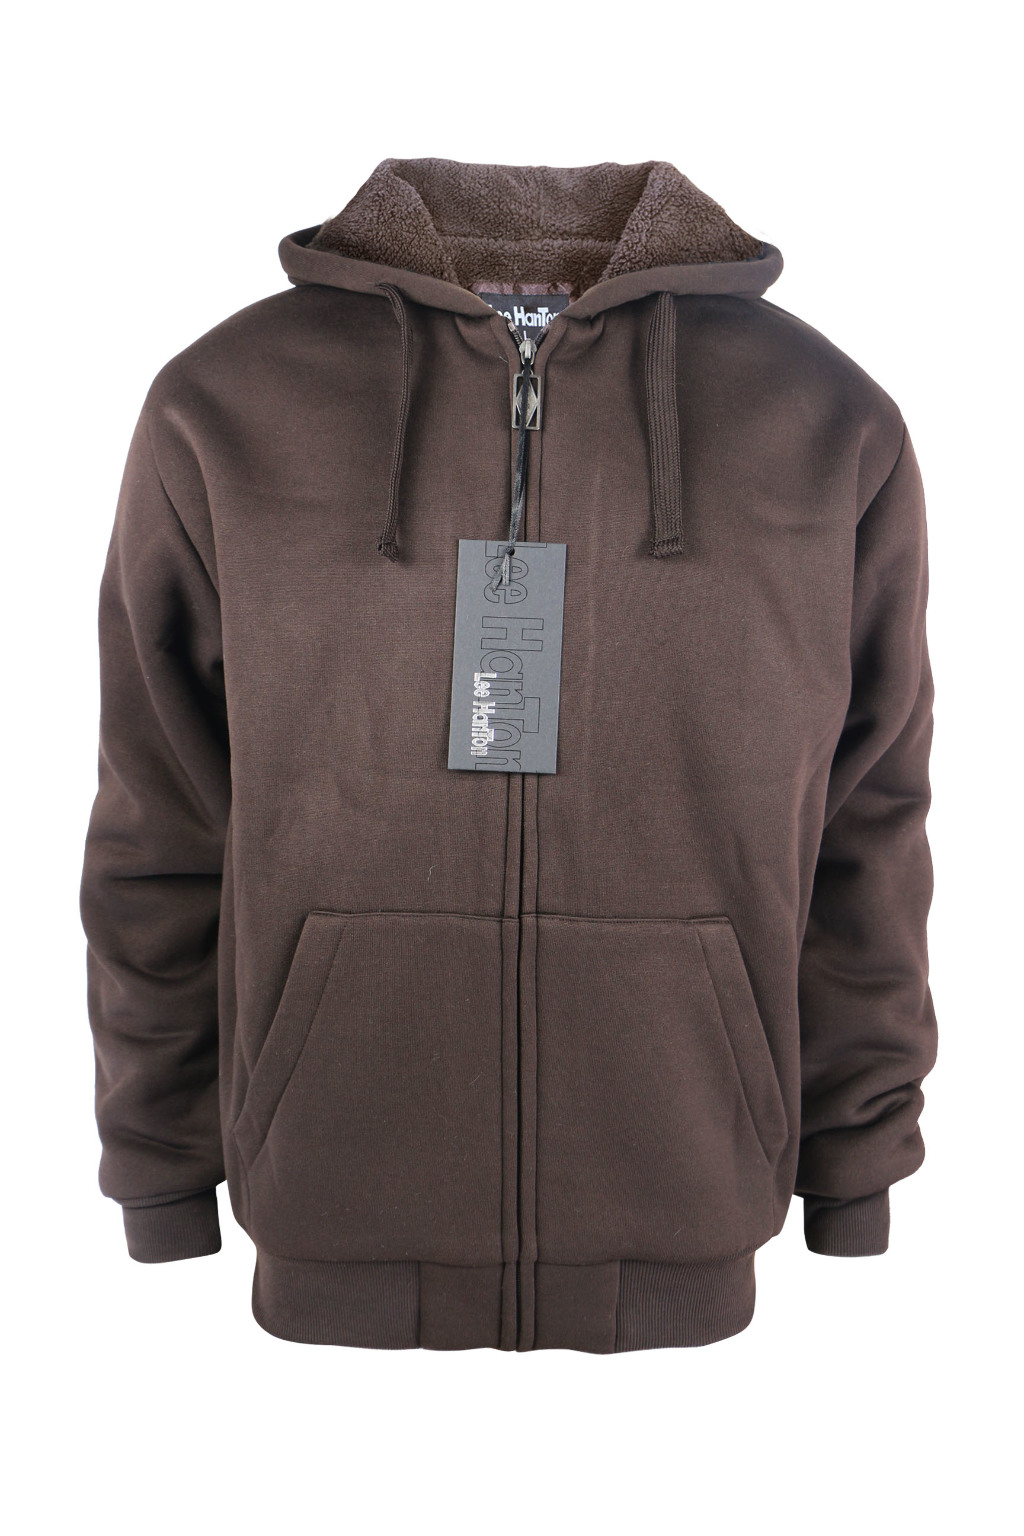 Wholesale Men's Sherpa-Lined Full Zip Hoodie Jacket - Brown